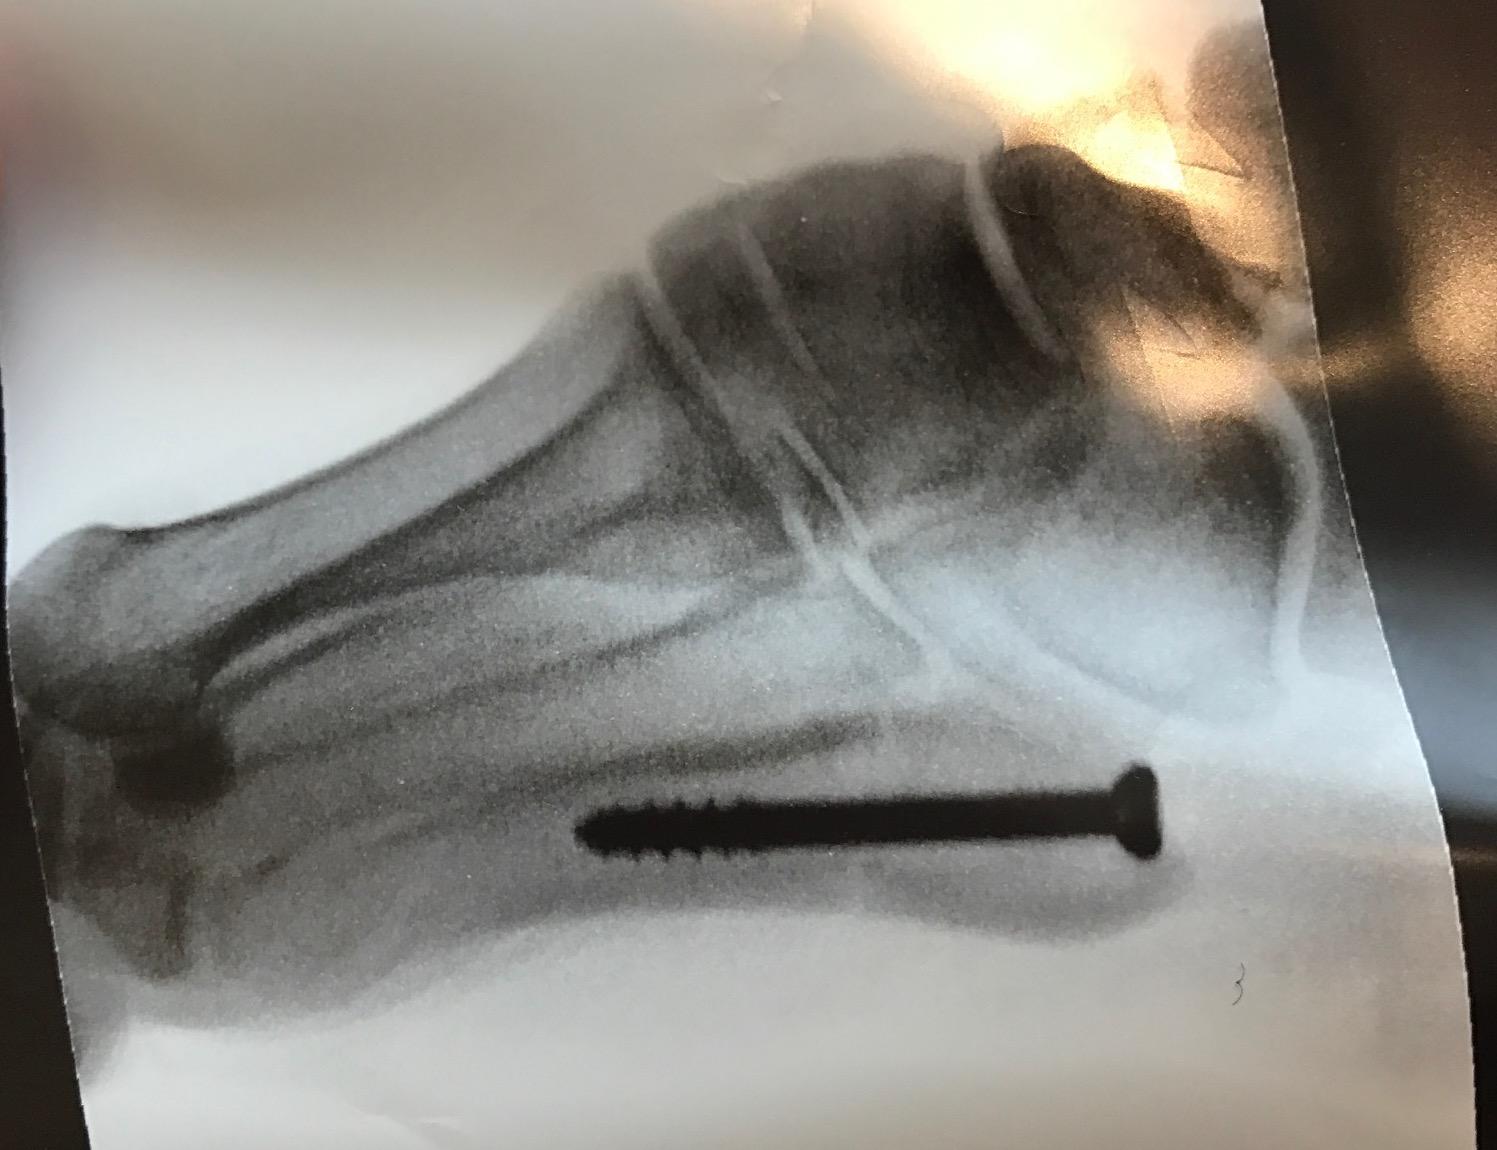 Jones Fracture
Jones fracture status post intramedullary screw fixation